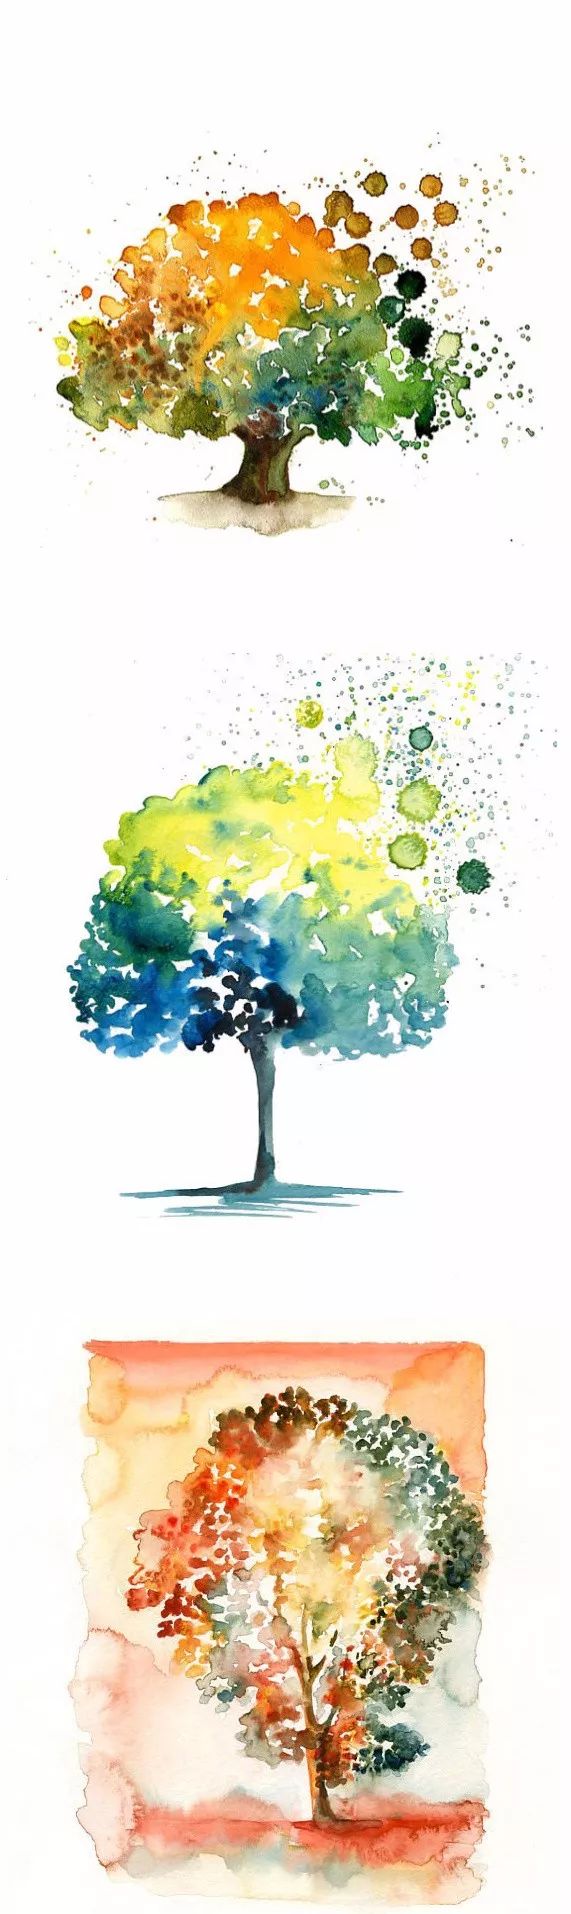 27种树的水彩画,你喜欢哪一棵?